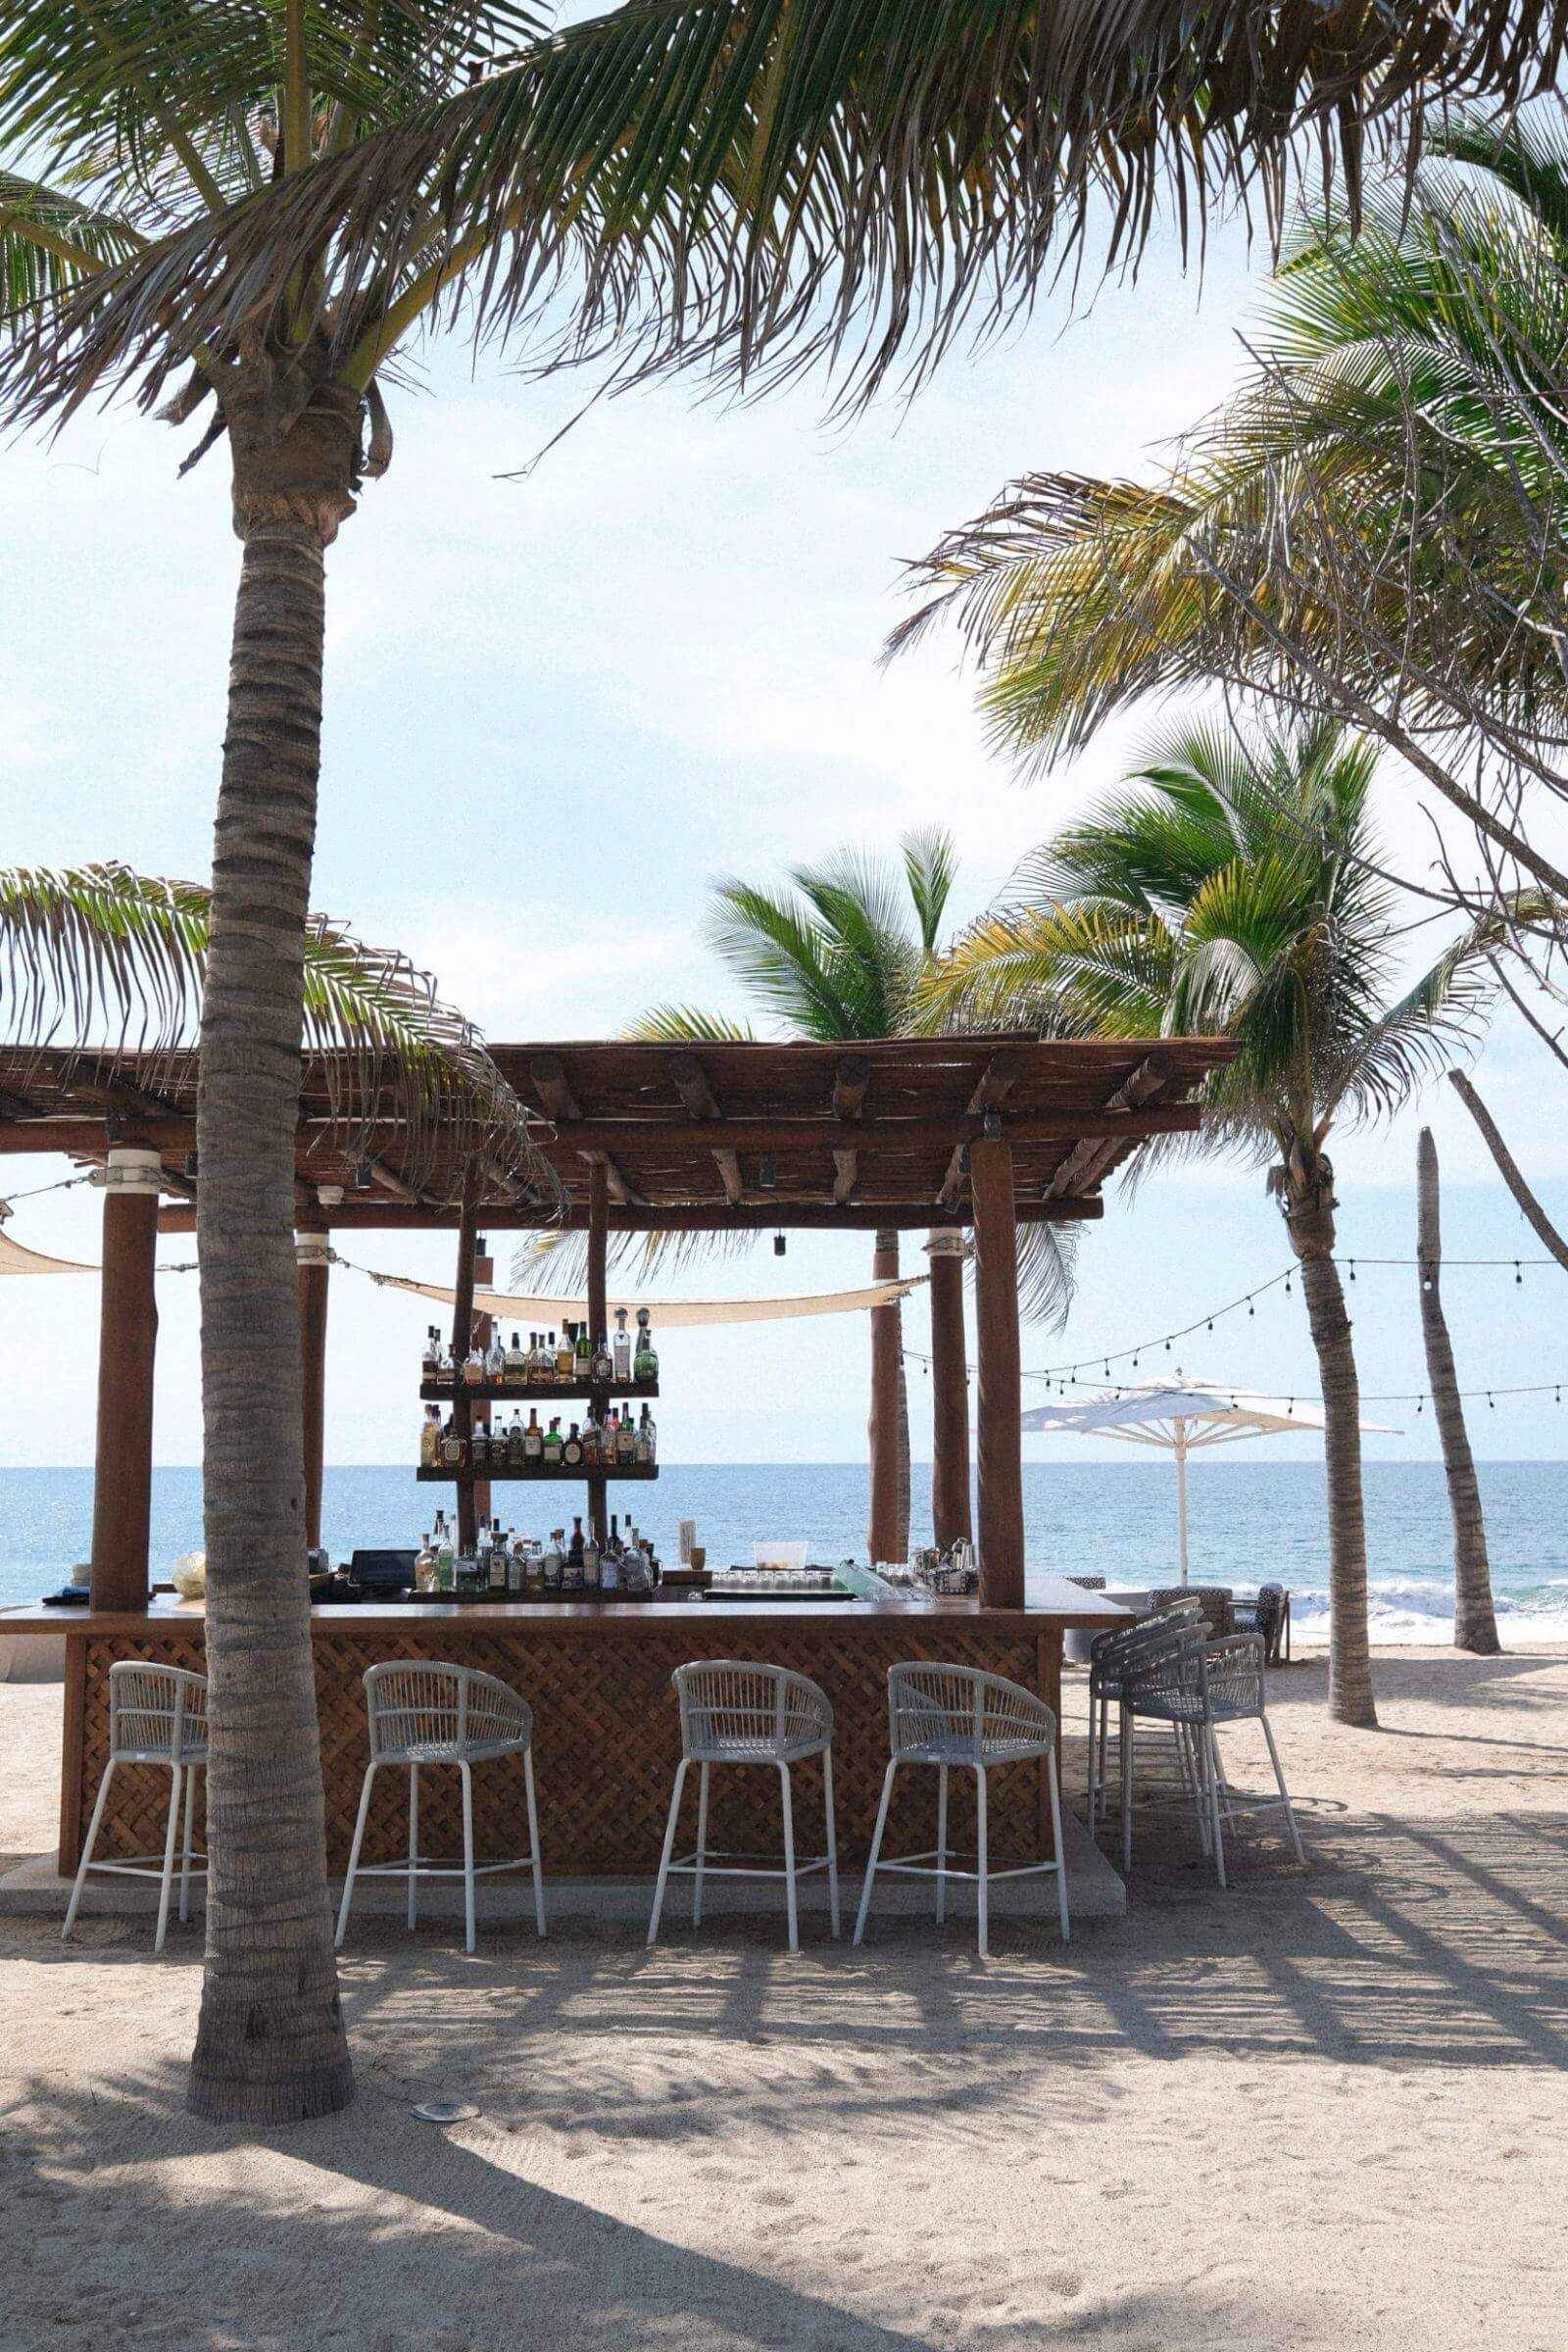 Imagen de la barra del bar con sillas en la playa